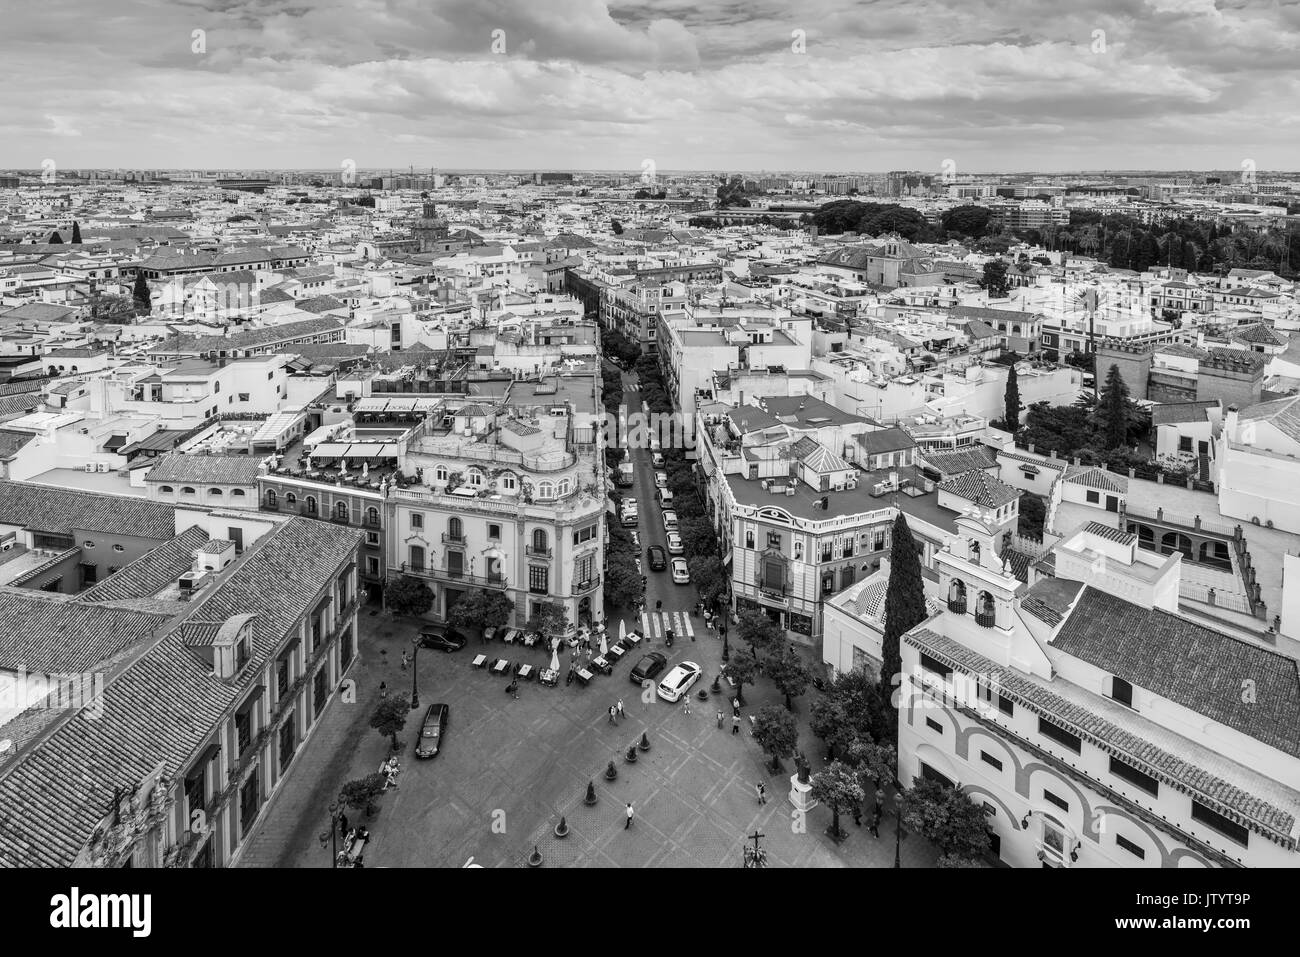 Sevilla, Spanien - 20. Mai 2014: Luftaufnahme von Sevilla, Spanien, aus dem Giralda Turm bei bewölktem Himmel. Die Schwarz-Weiß-Fotografie. Stockfoto